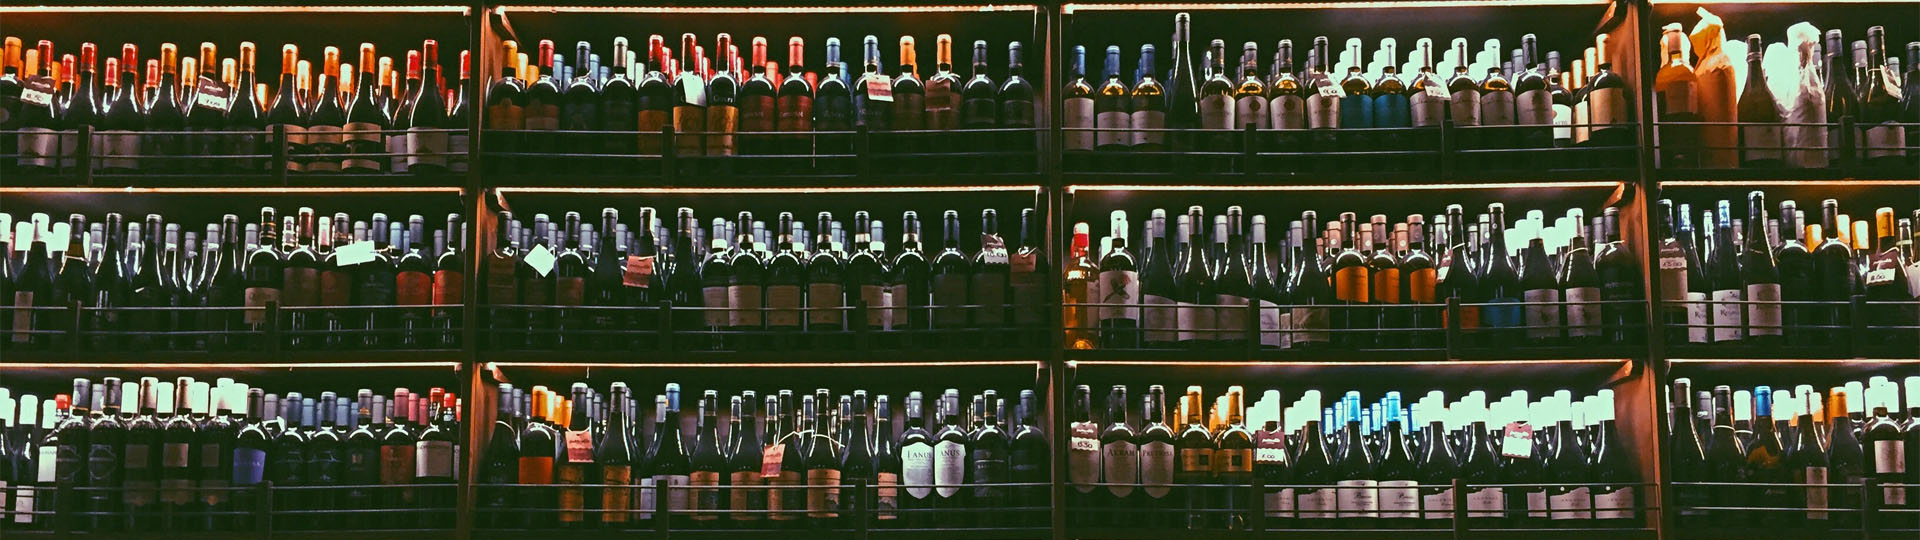 Großes Weinregal mit vielen Flaschen